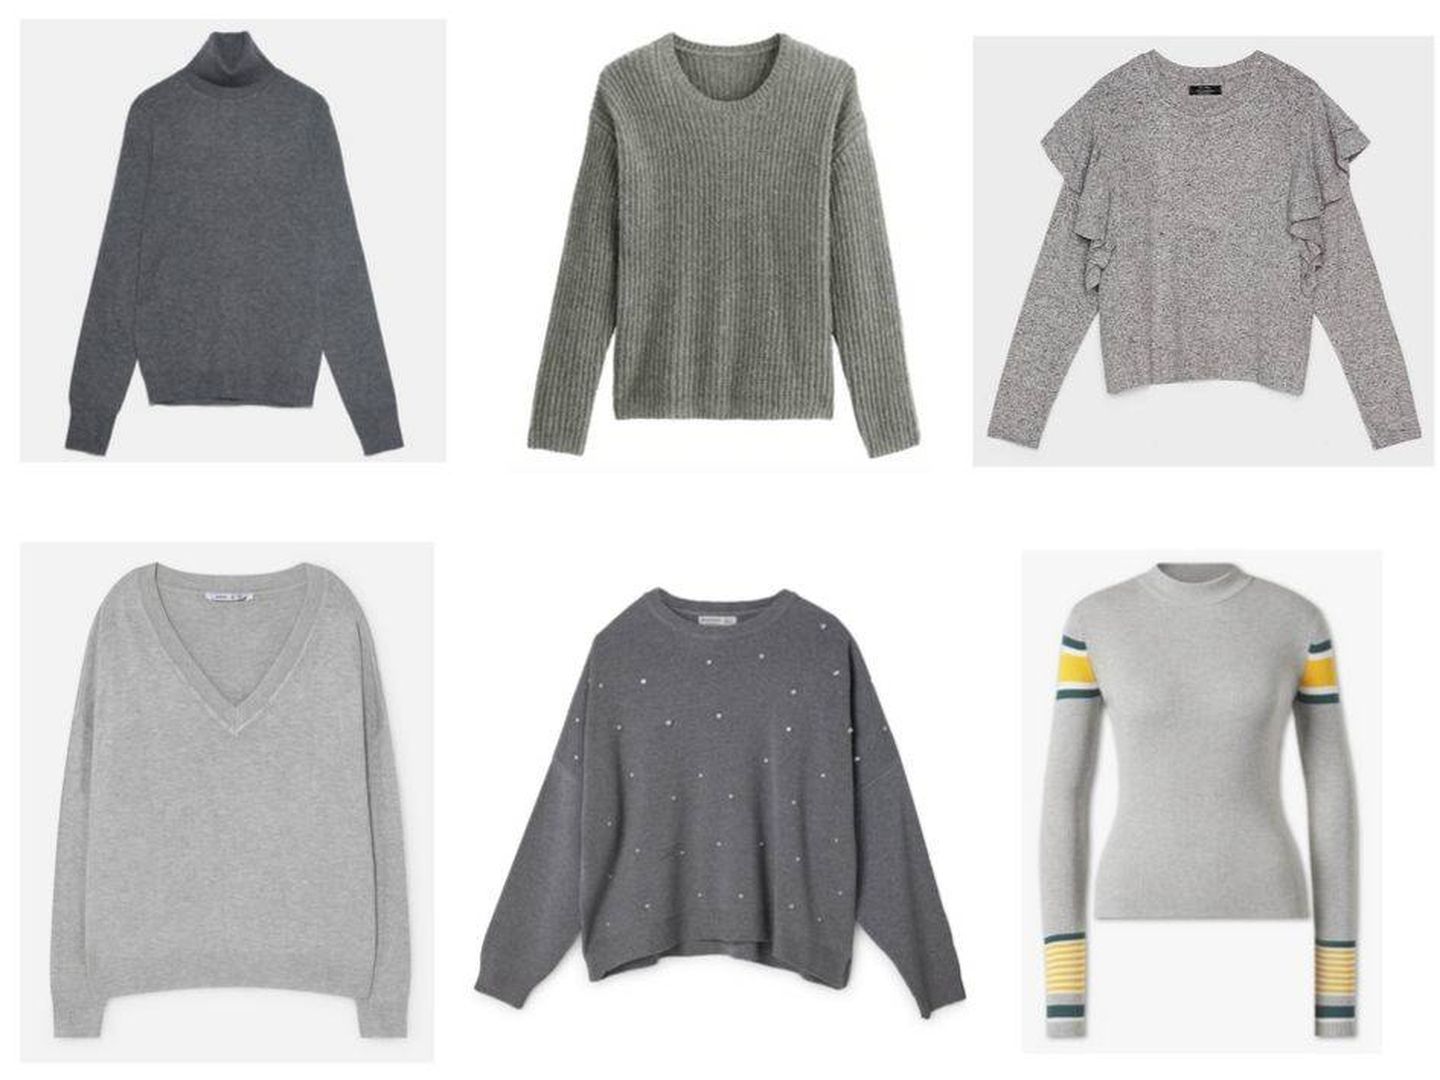 Una ración de jerséis grises para tu colección.